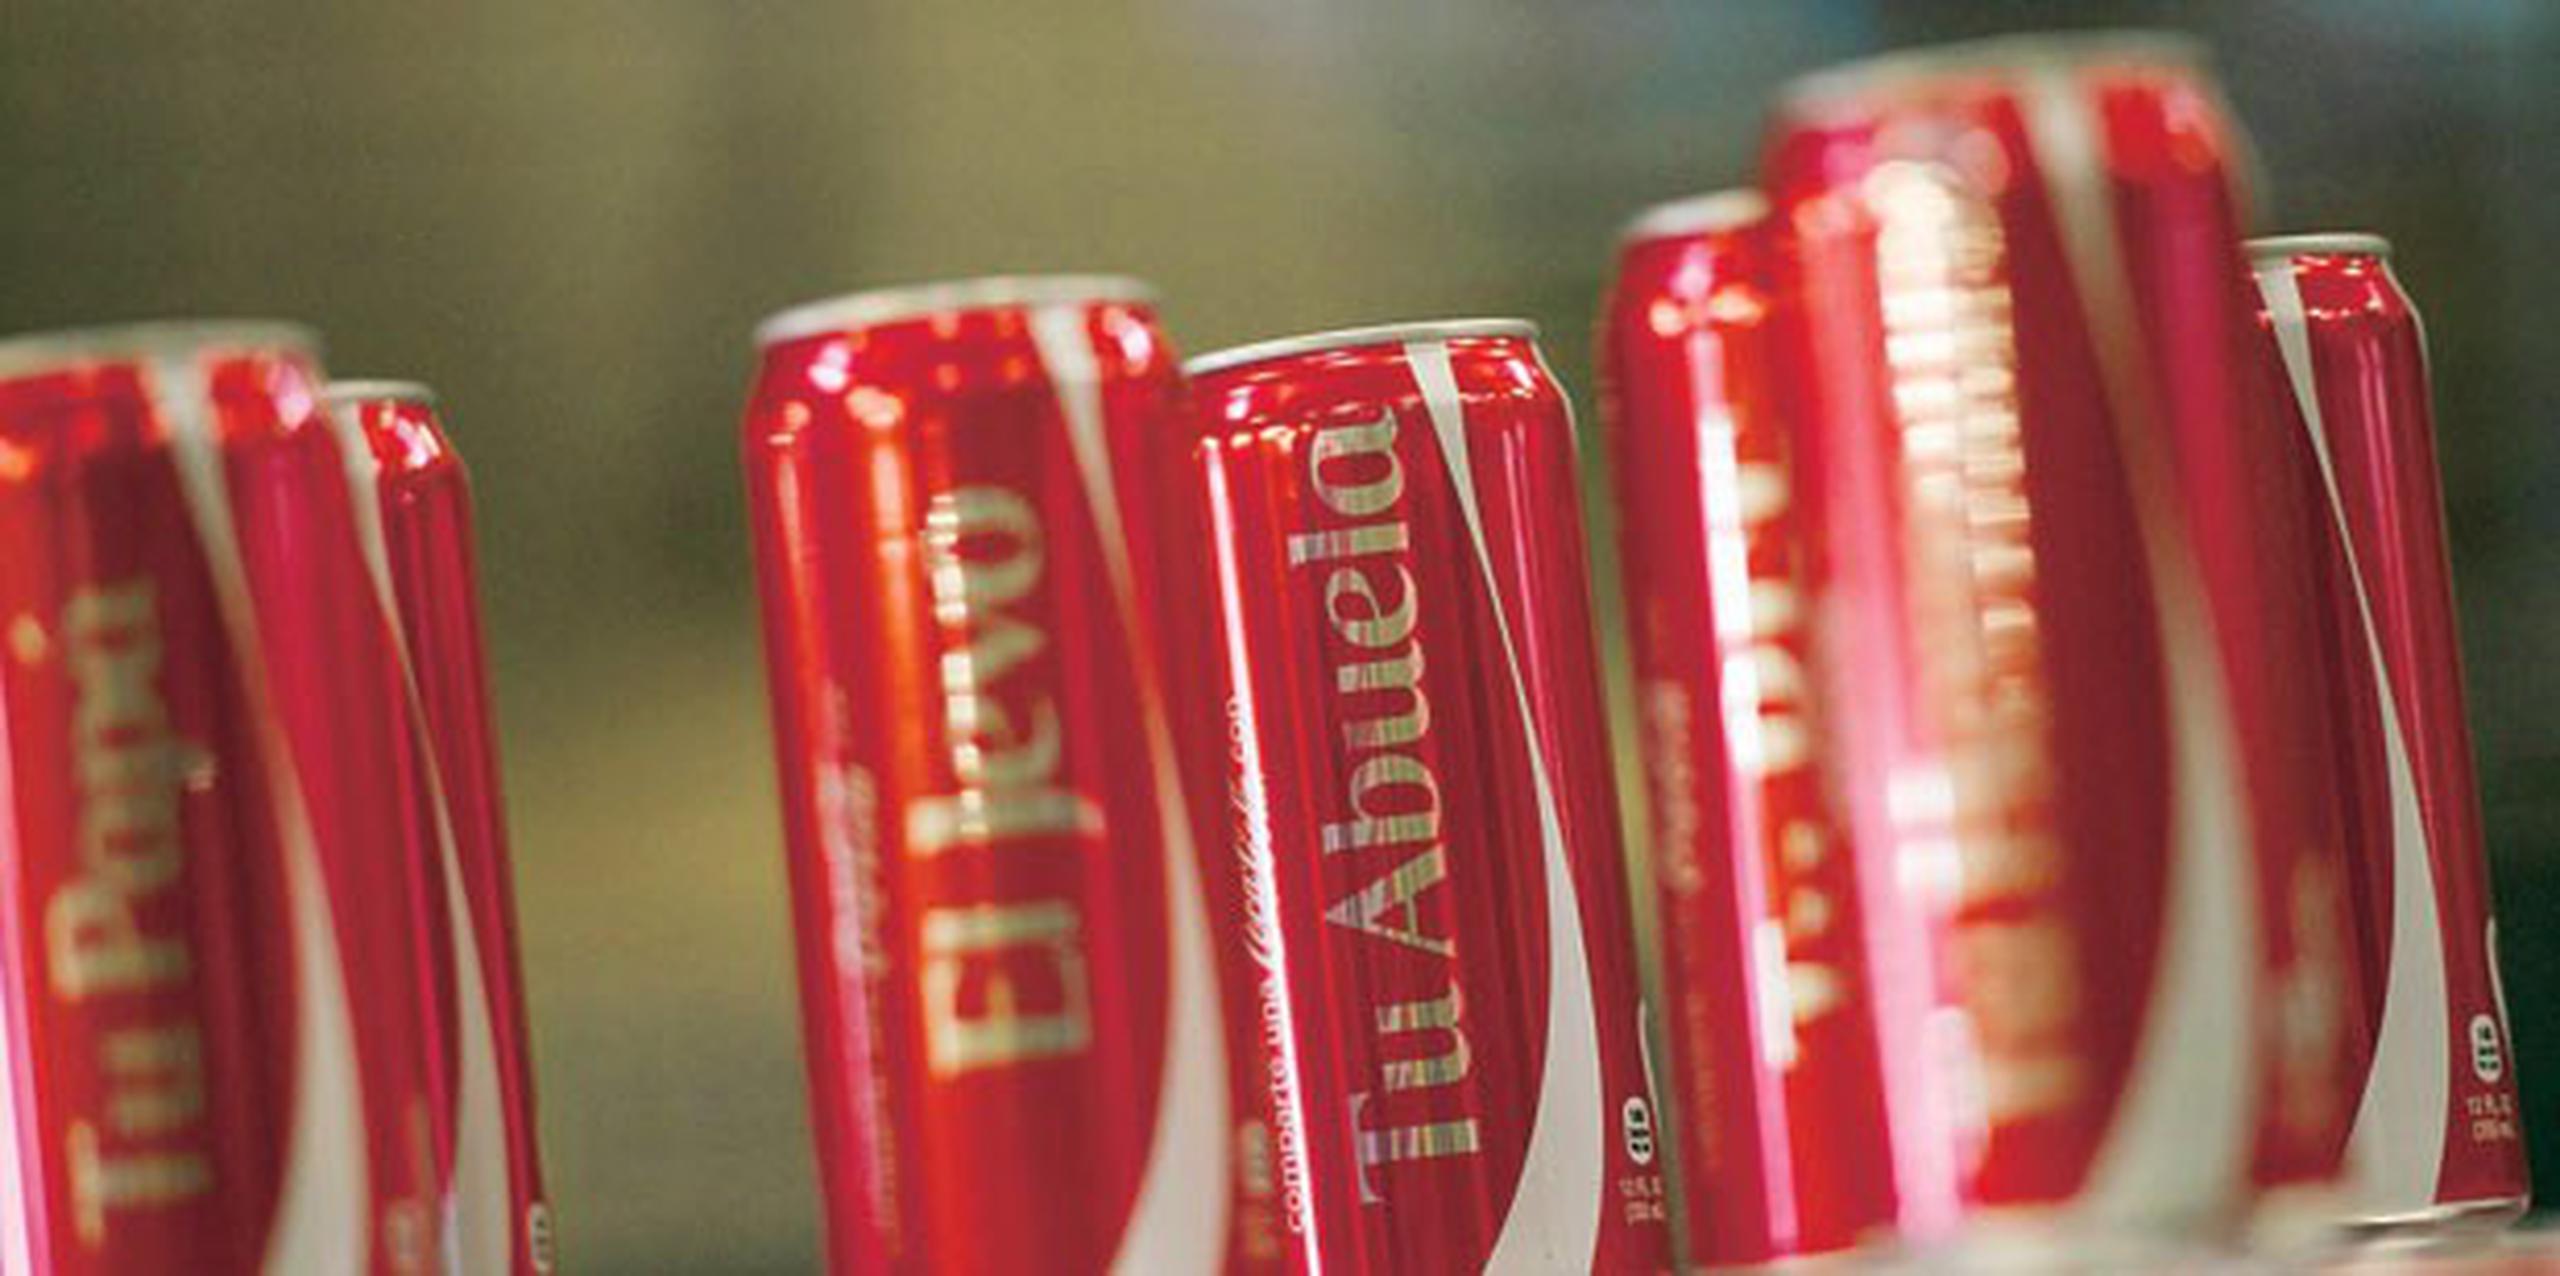 Como parte de su campaña el año pasado de vender latas y botellas con nombres, Coca Cola dijo que distribuyó un millón de minilatas. (Archivo)